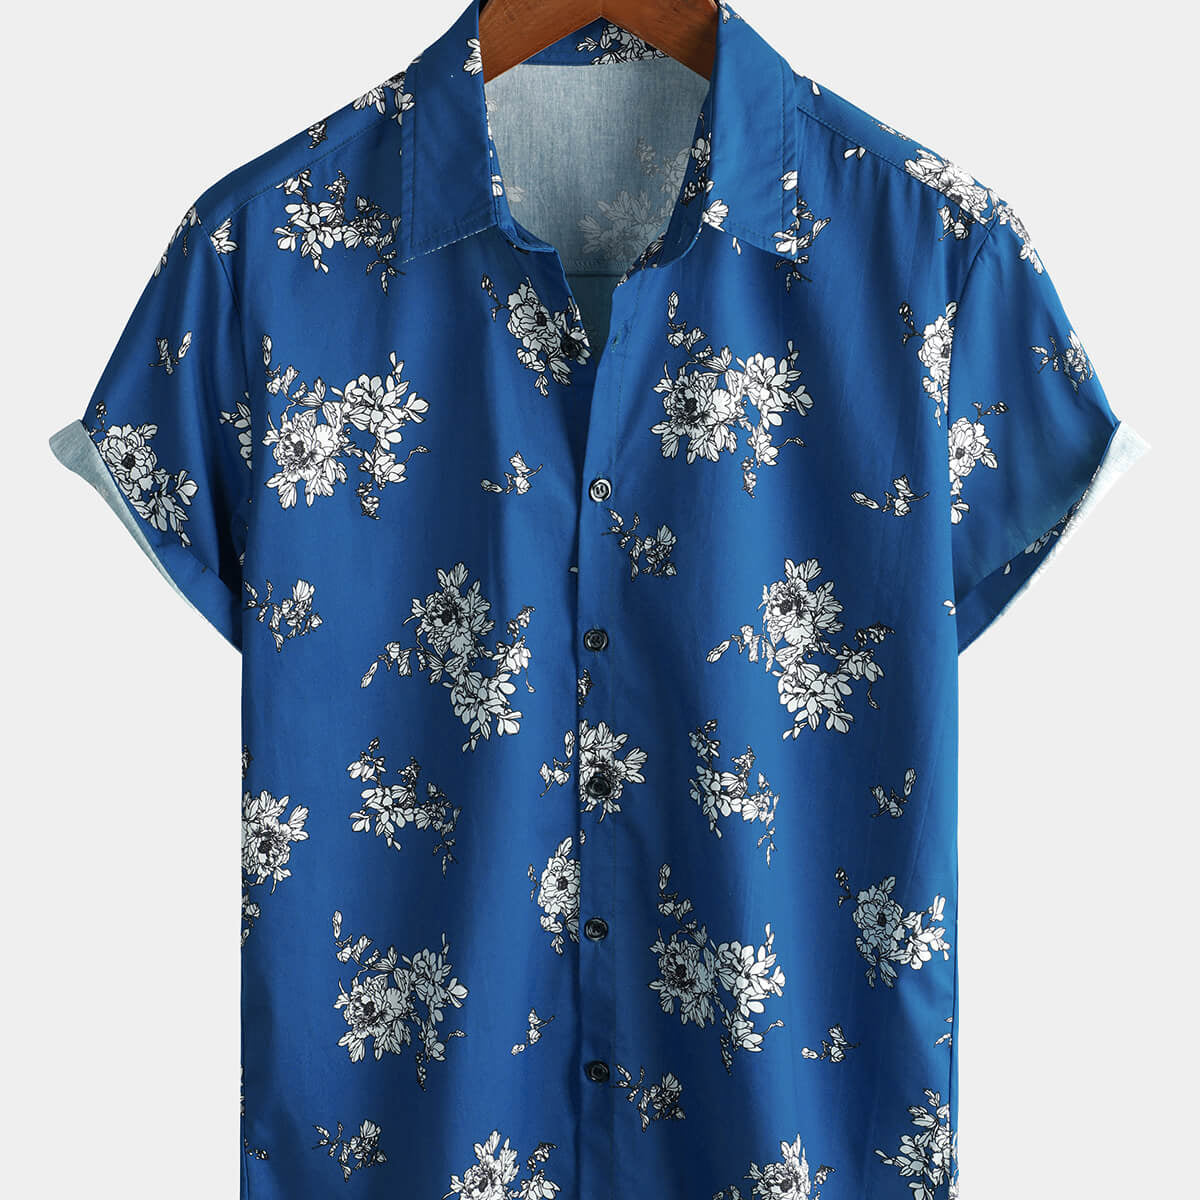 Men's Blue Floral Hawaiian Flower Print Short Sleeve Shirt